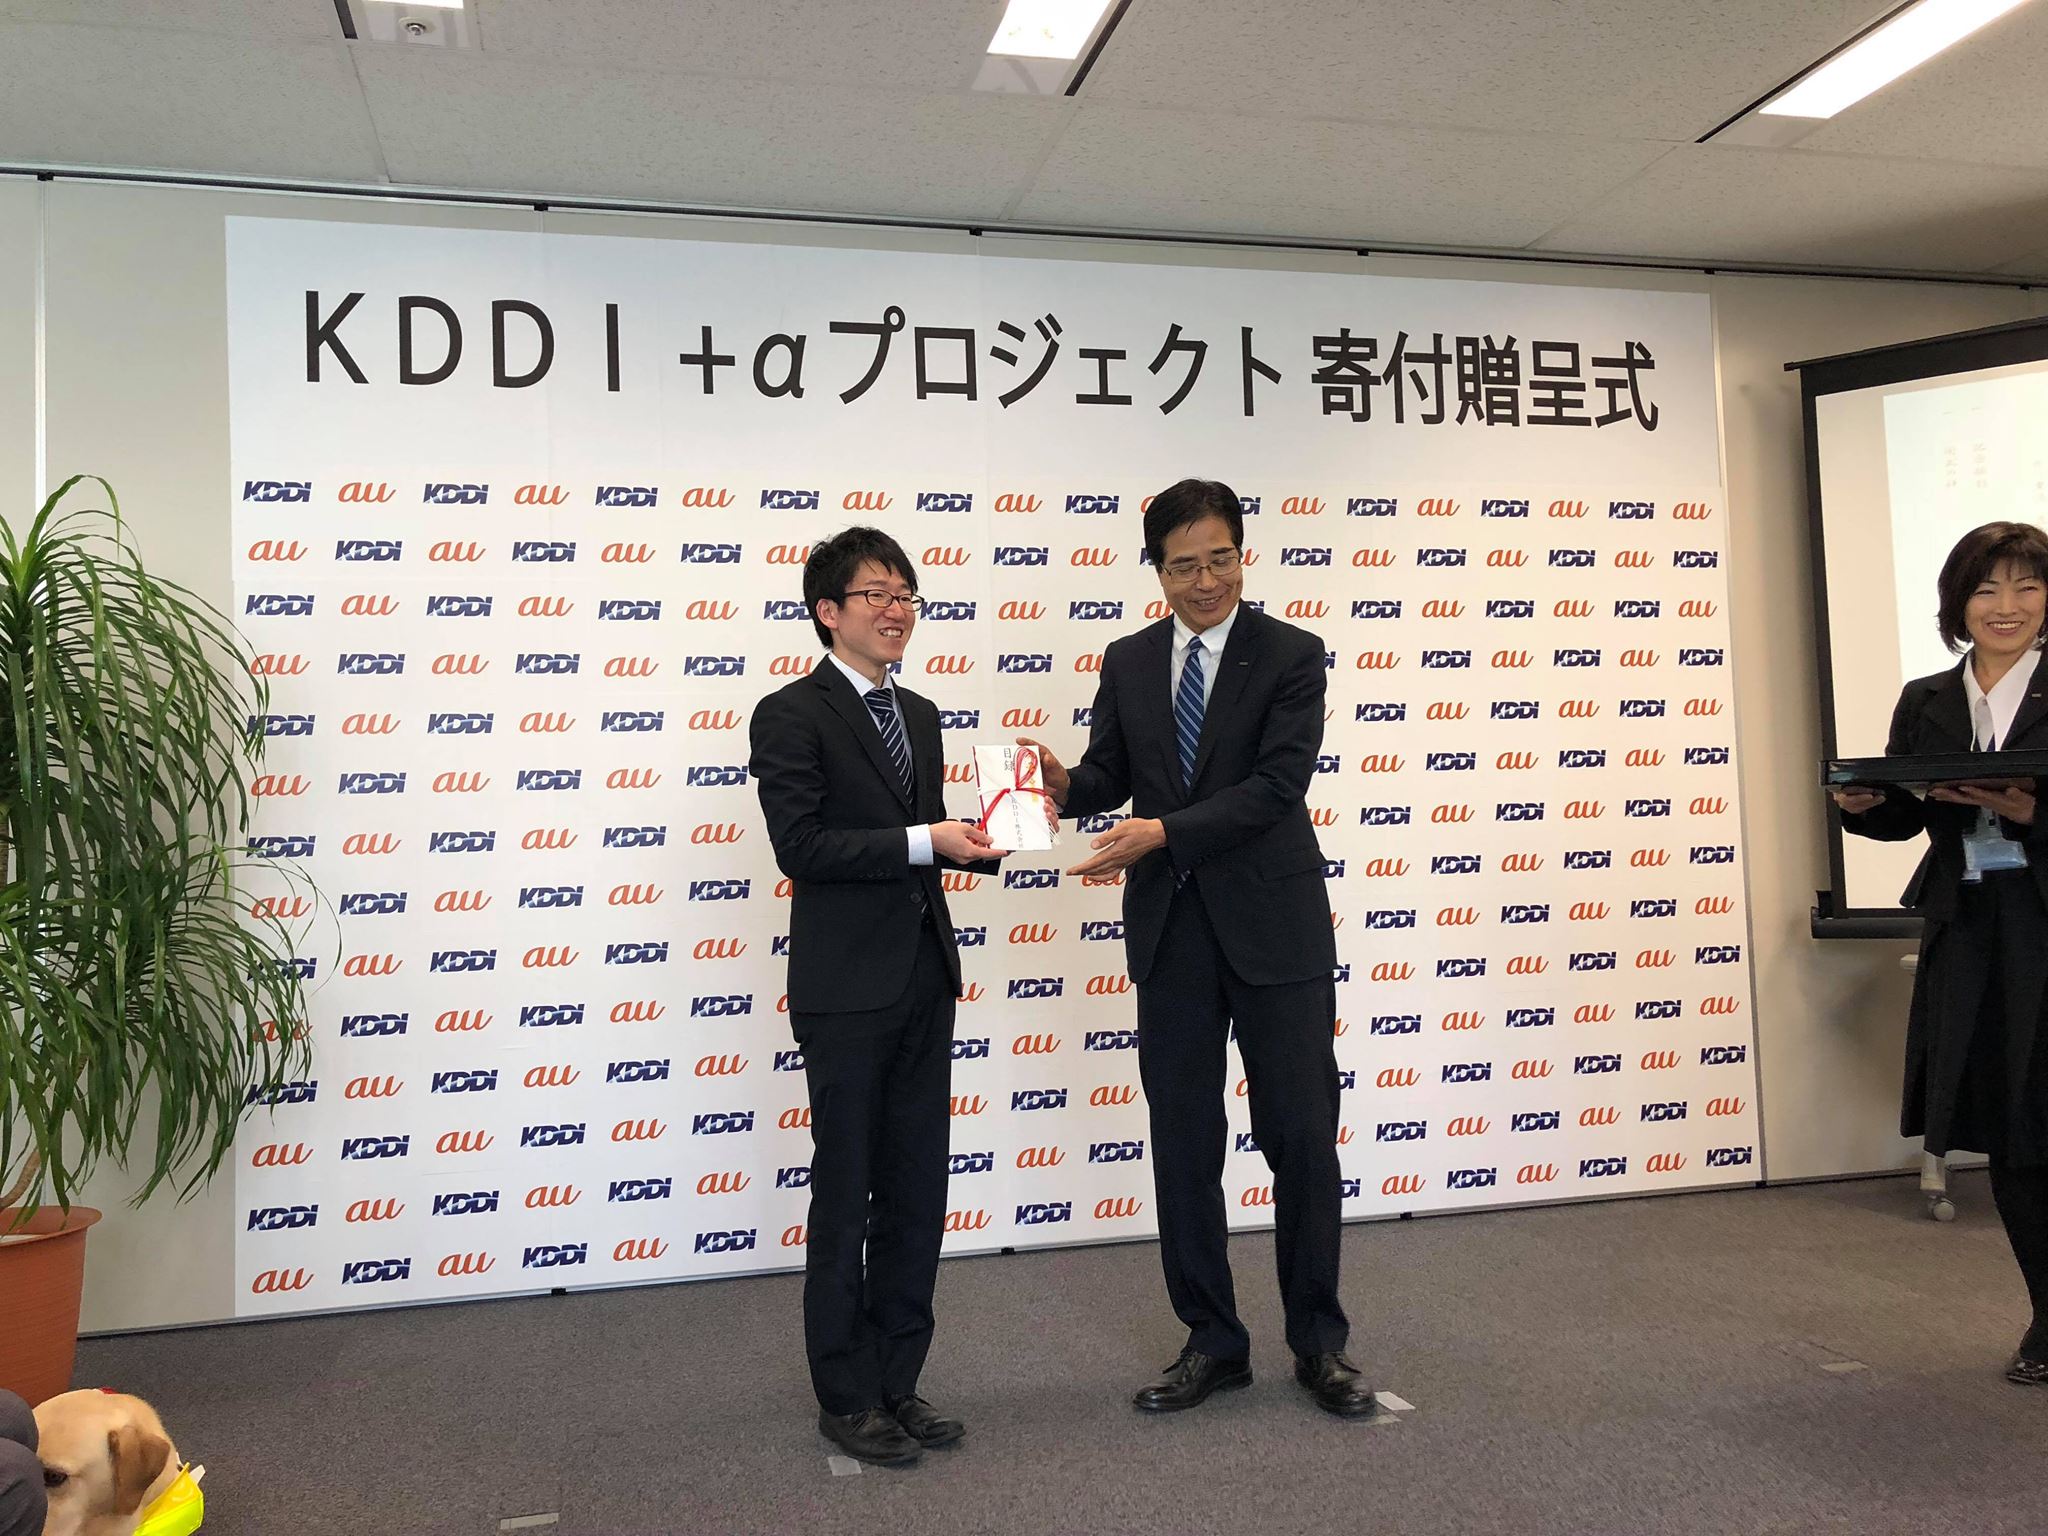 KDDI株式会社北海道支社様より寄付をいただきました